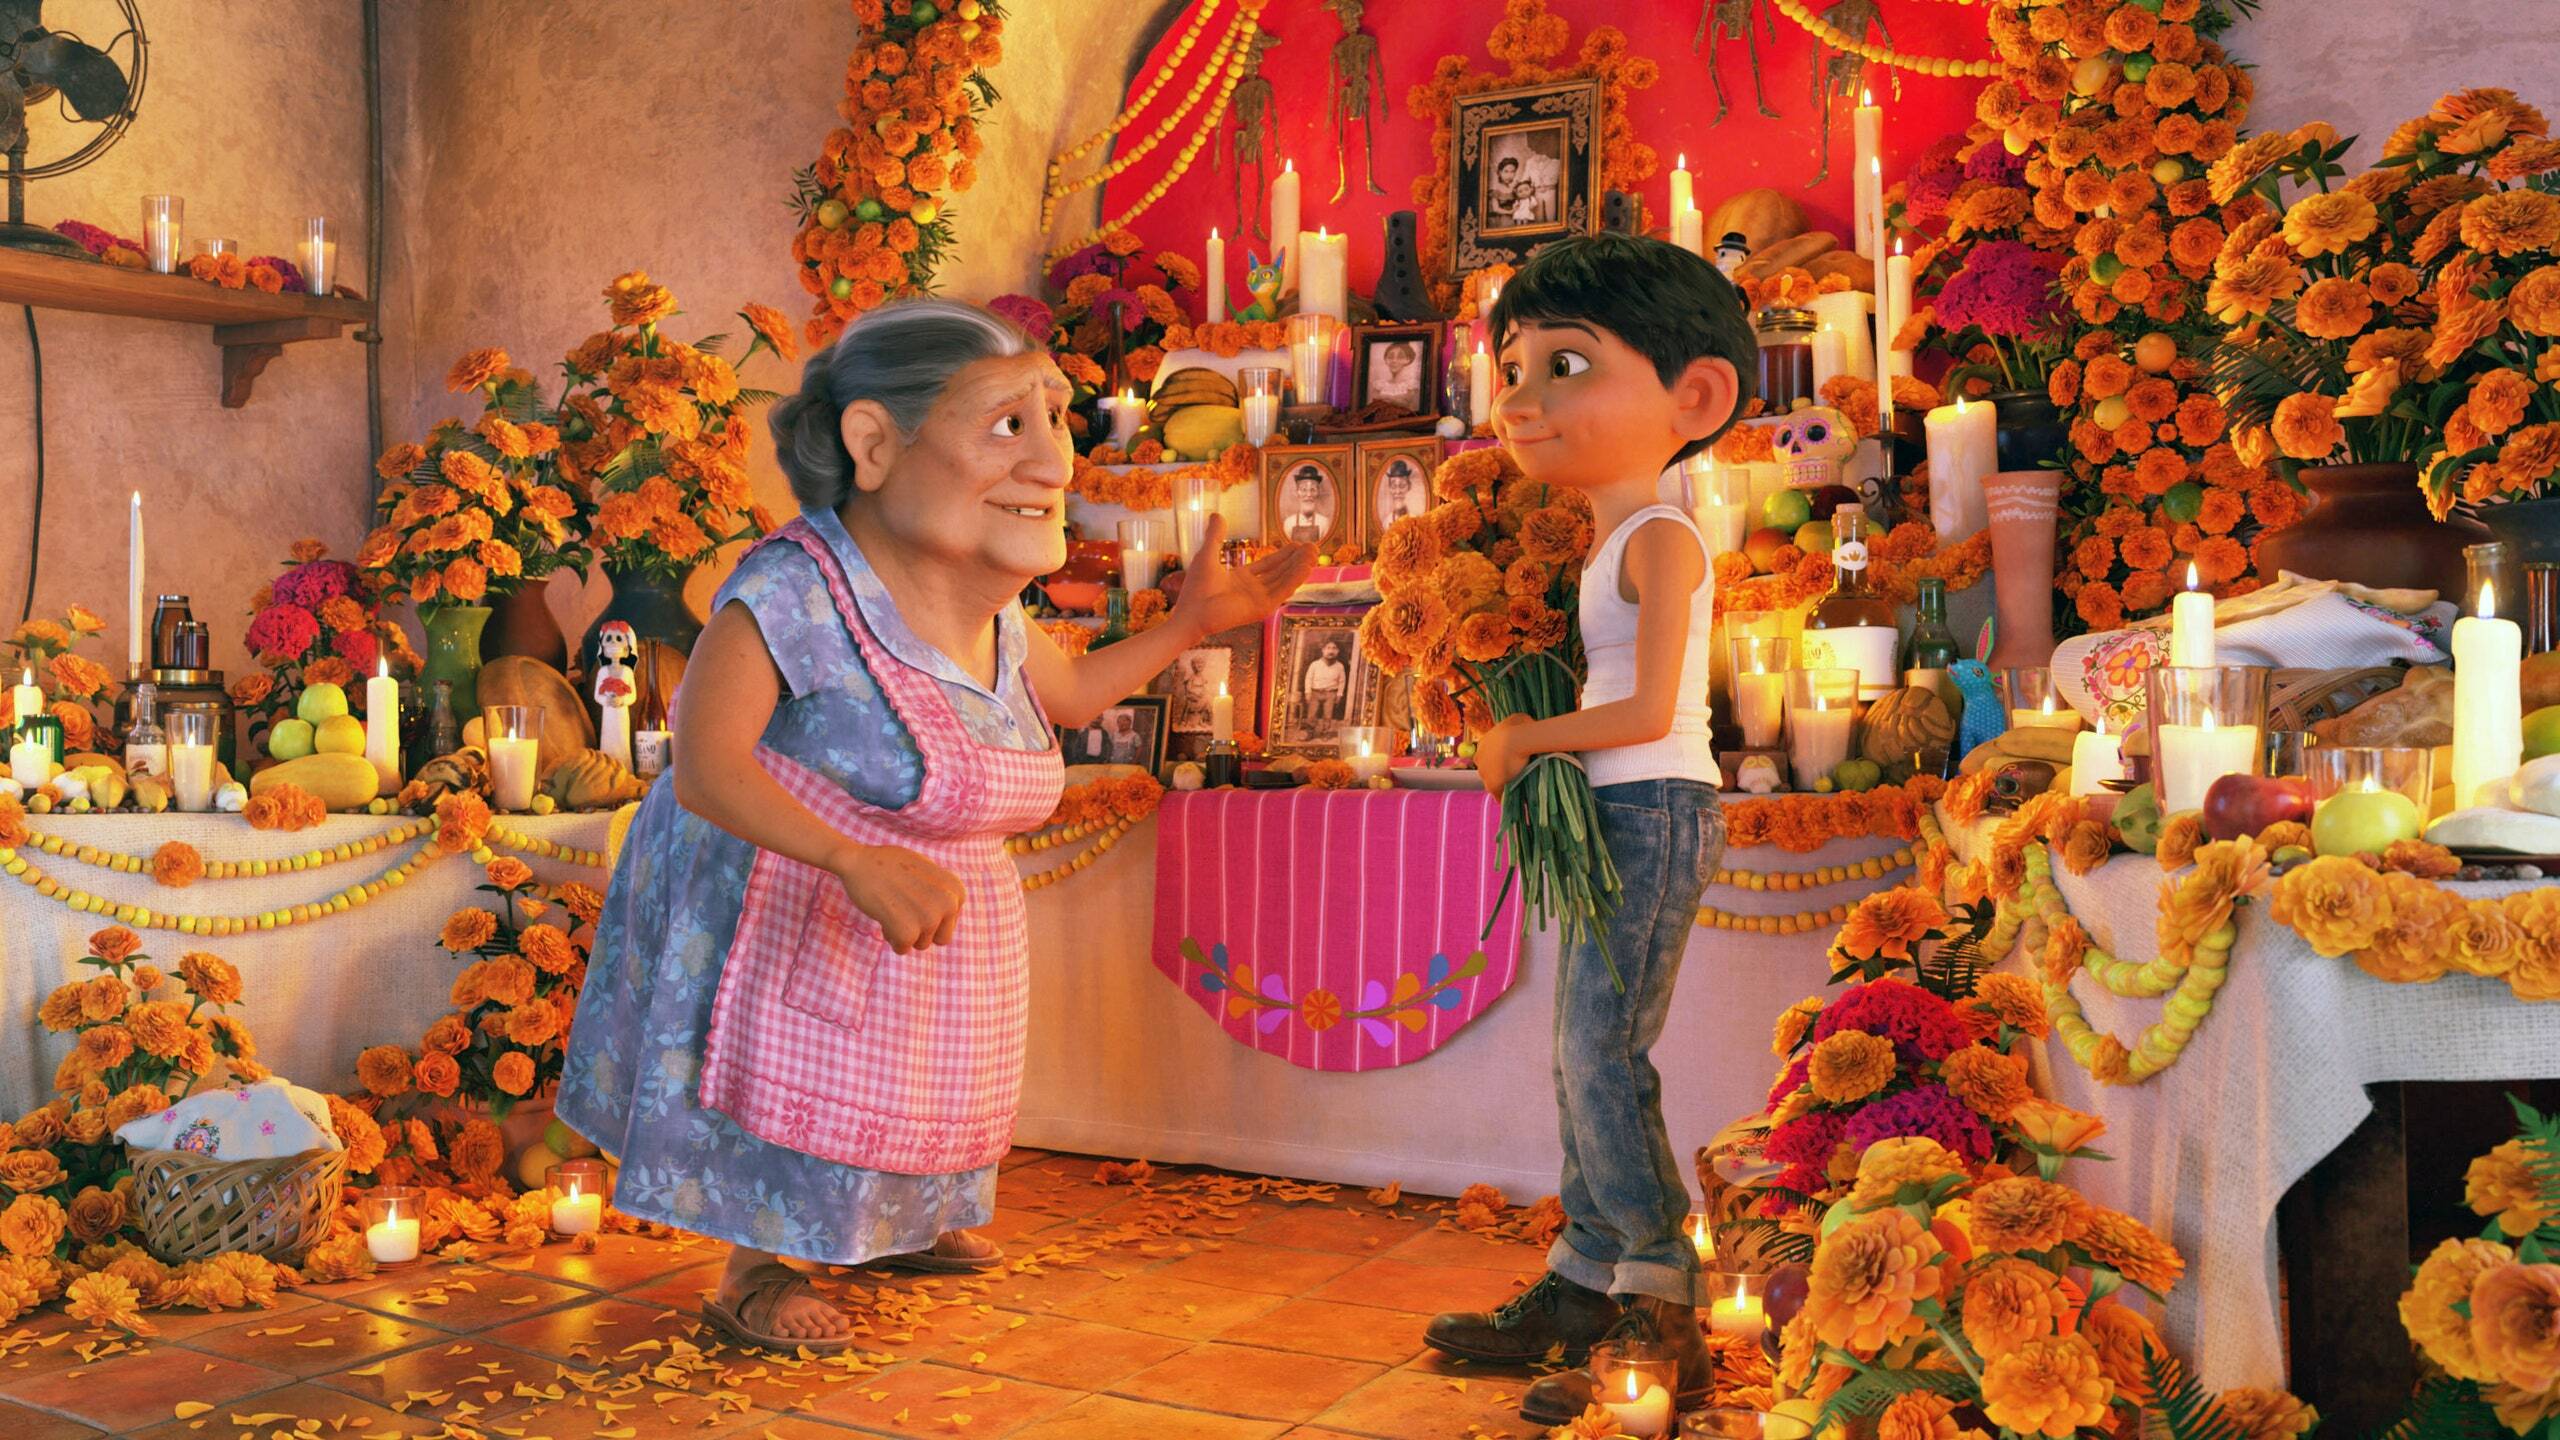 Miguel and Abuelita celebrating Día de los muertos.